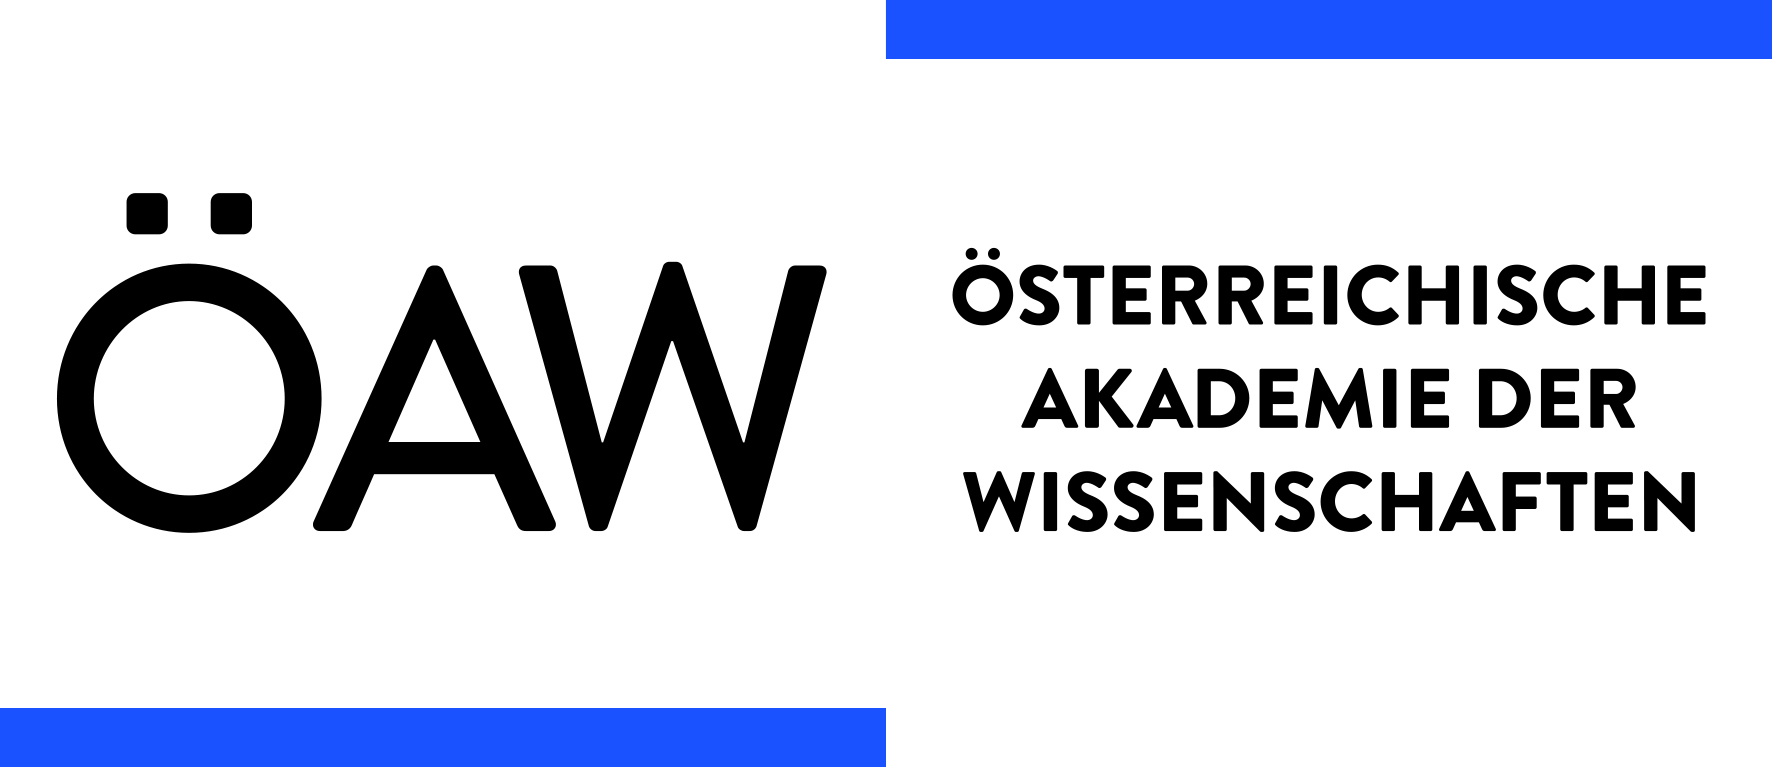 logo der österreichischen akademie der wissenschaften